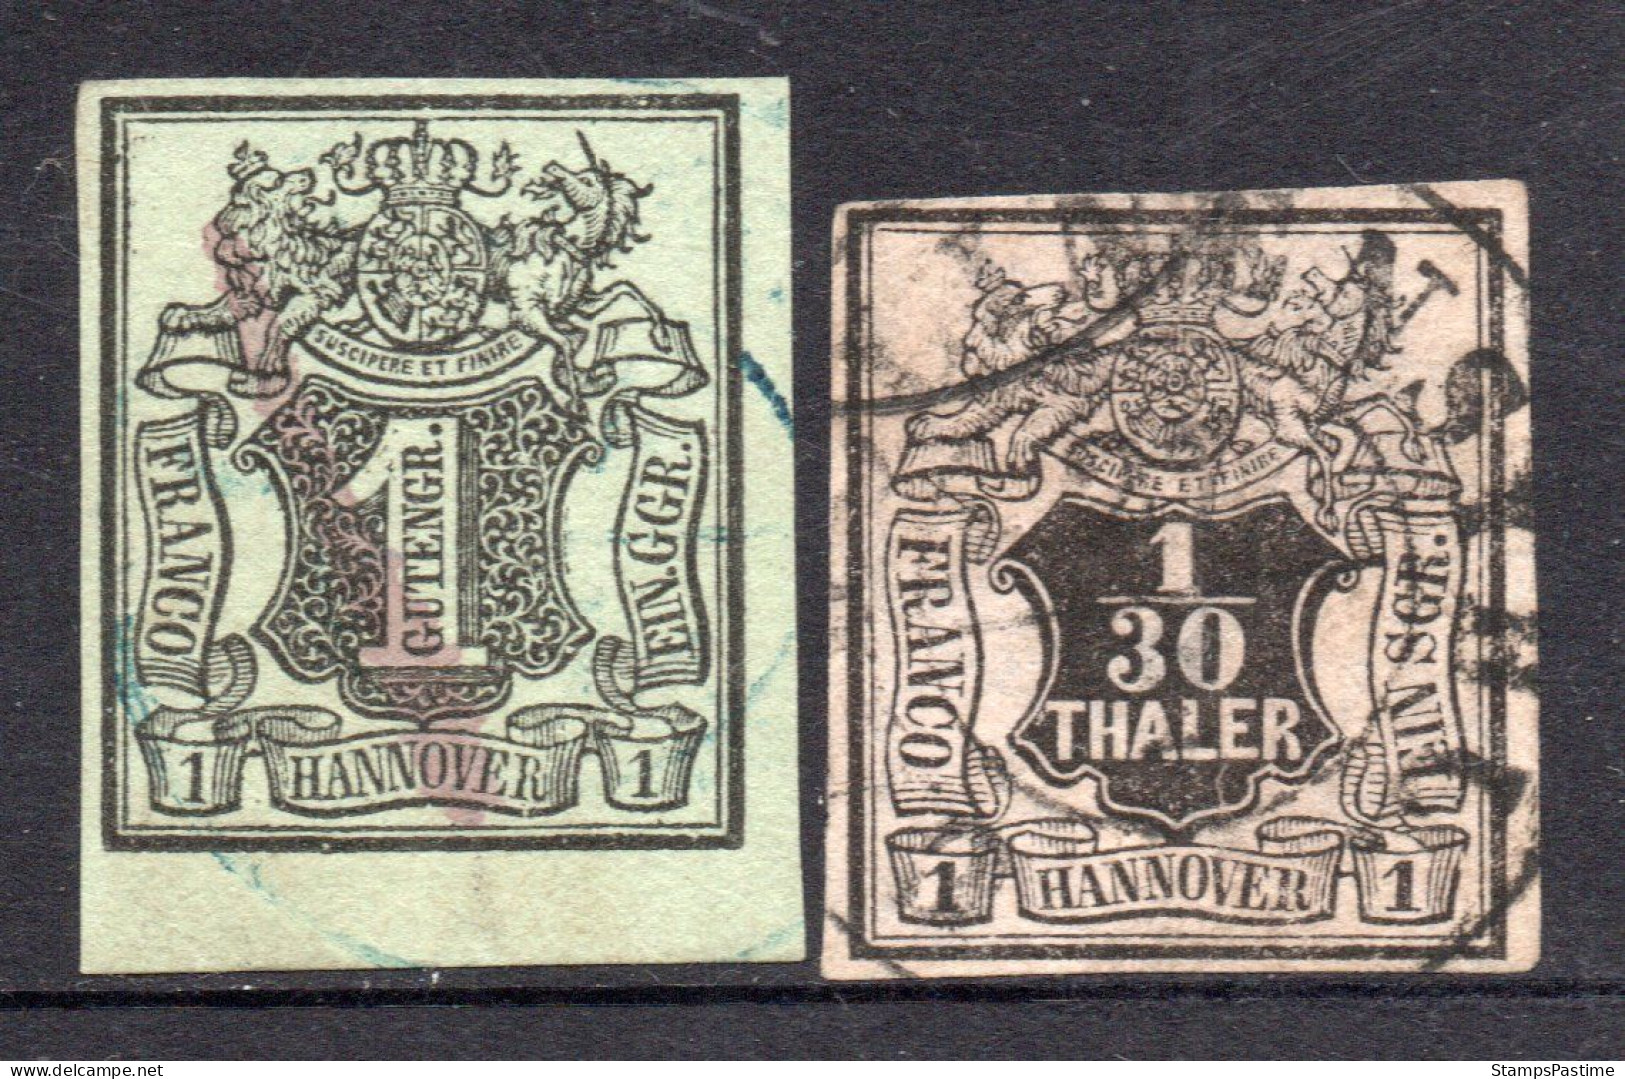 HANOVRE - HANNOVER (ALEMANIA) Serie X 2 Sellos Usados ESCUDO DE ARMAS Año 1851 – Valorizada En Catálogo € 74,00 - Hannover